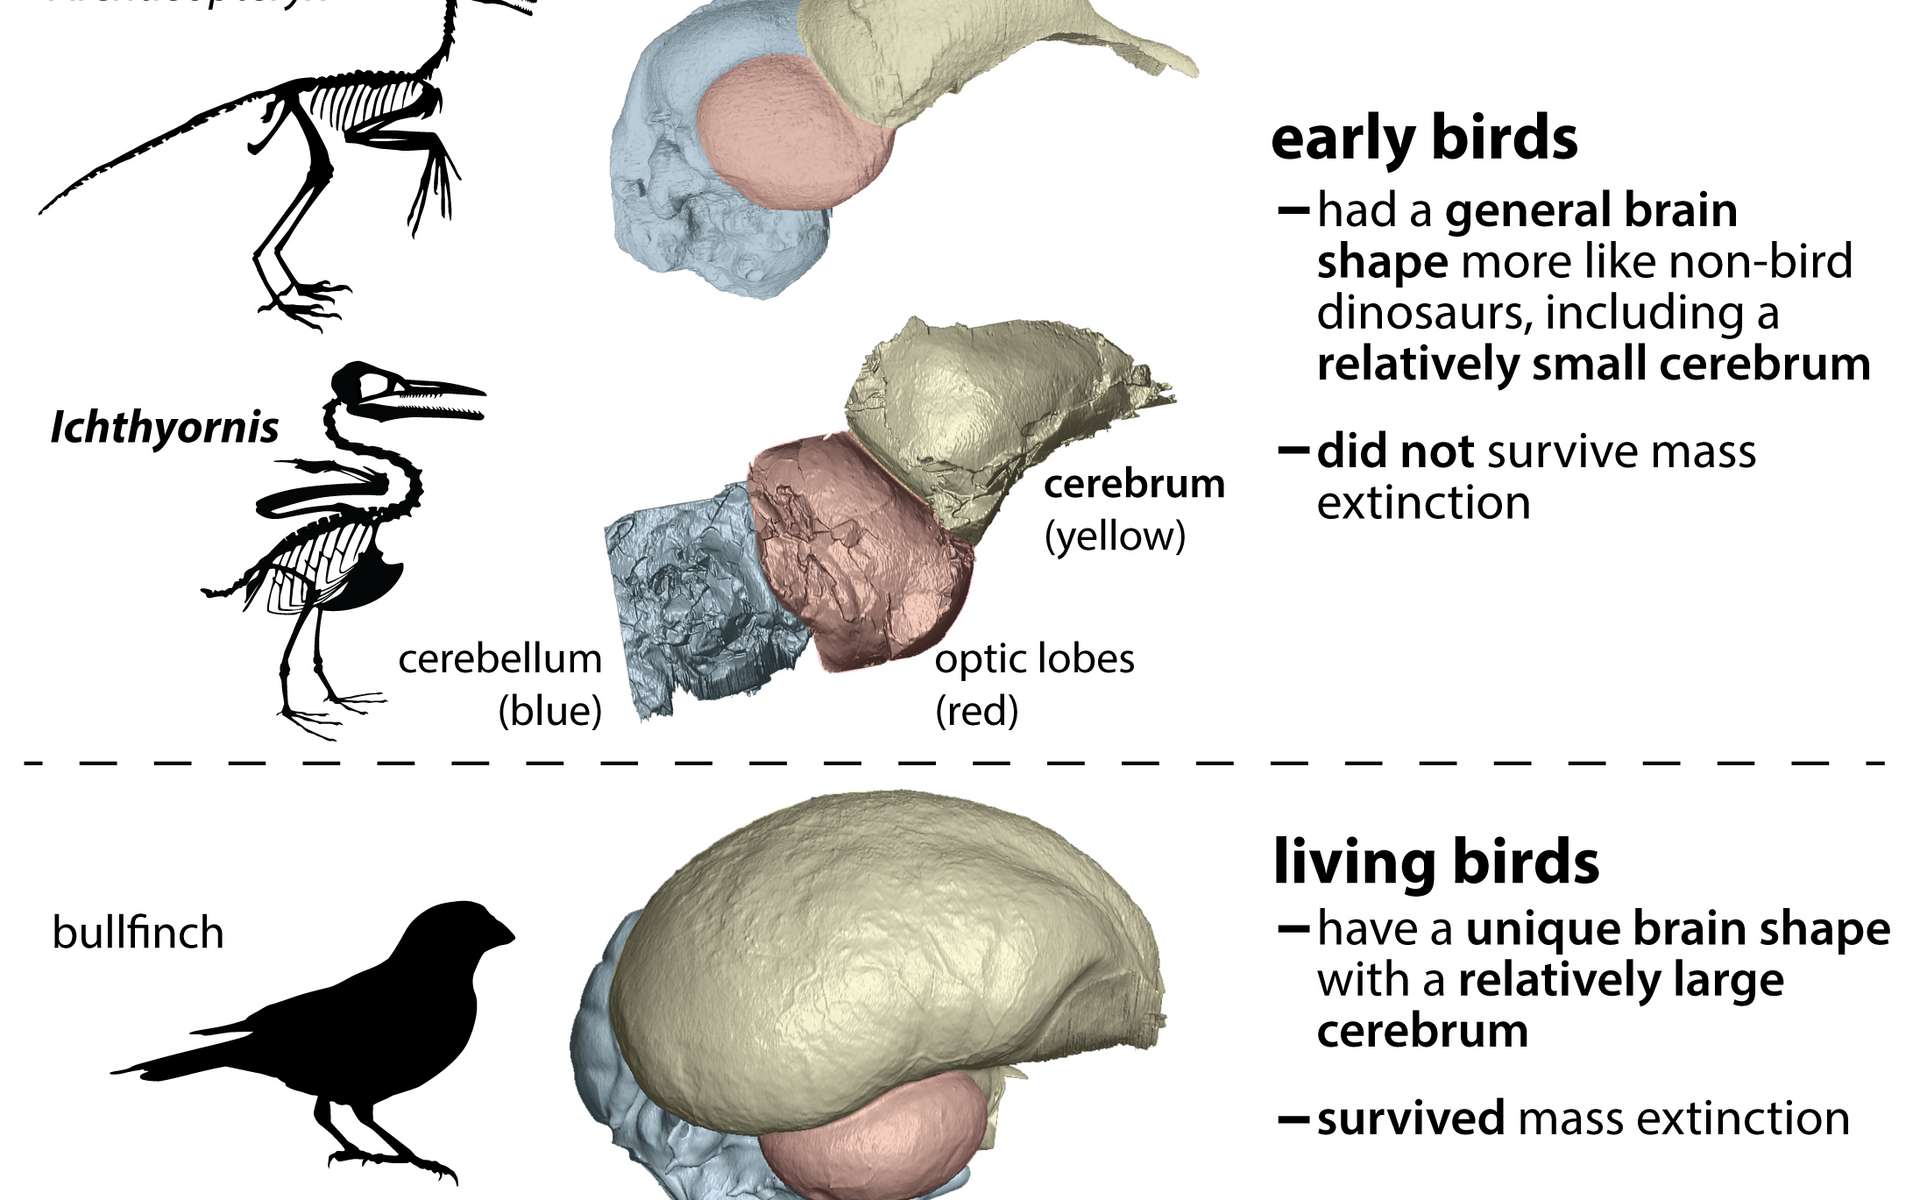 Les oiseaux devraient leur survie à leur cerveau différent de celui des dinosaures